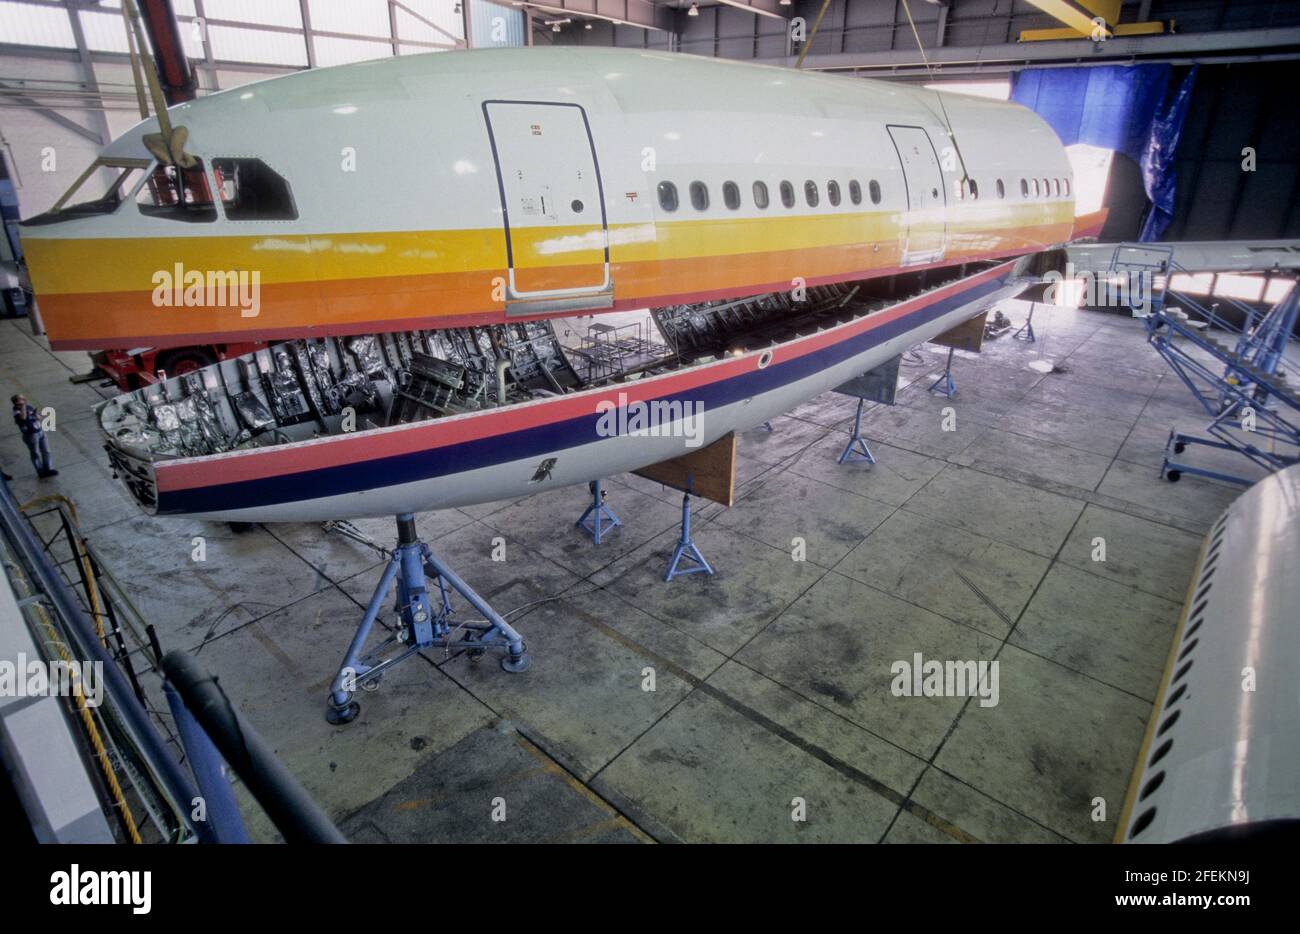 AMS, Services de maintenance aérienne. DAS Unternehmen ams recycelt in Airbus A300 Flugzeug. Banque D'Images